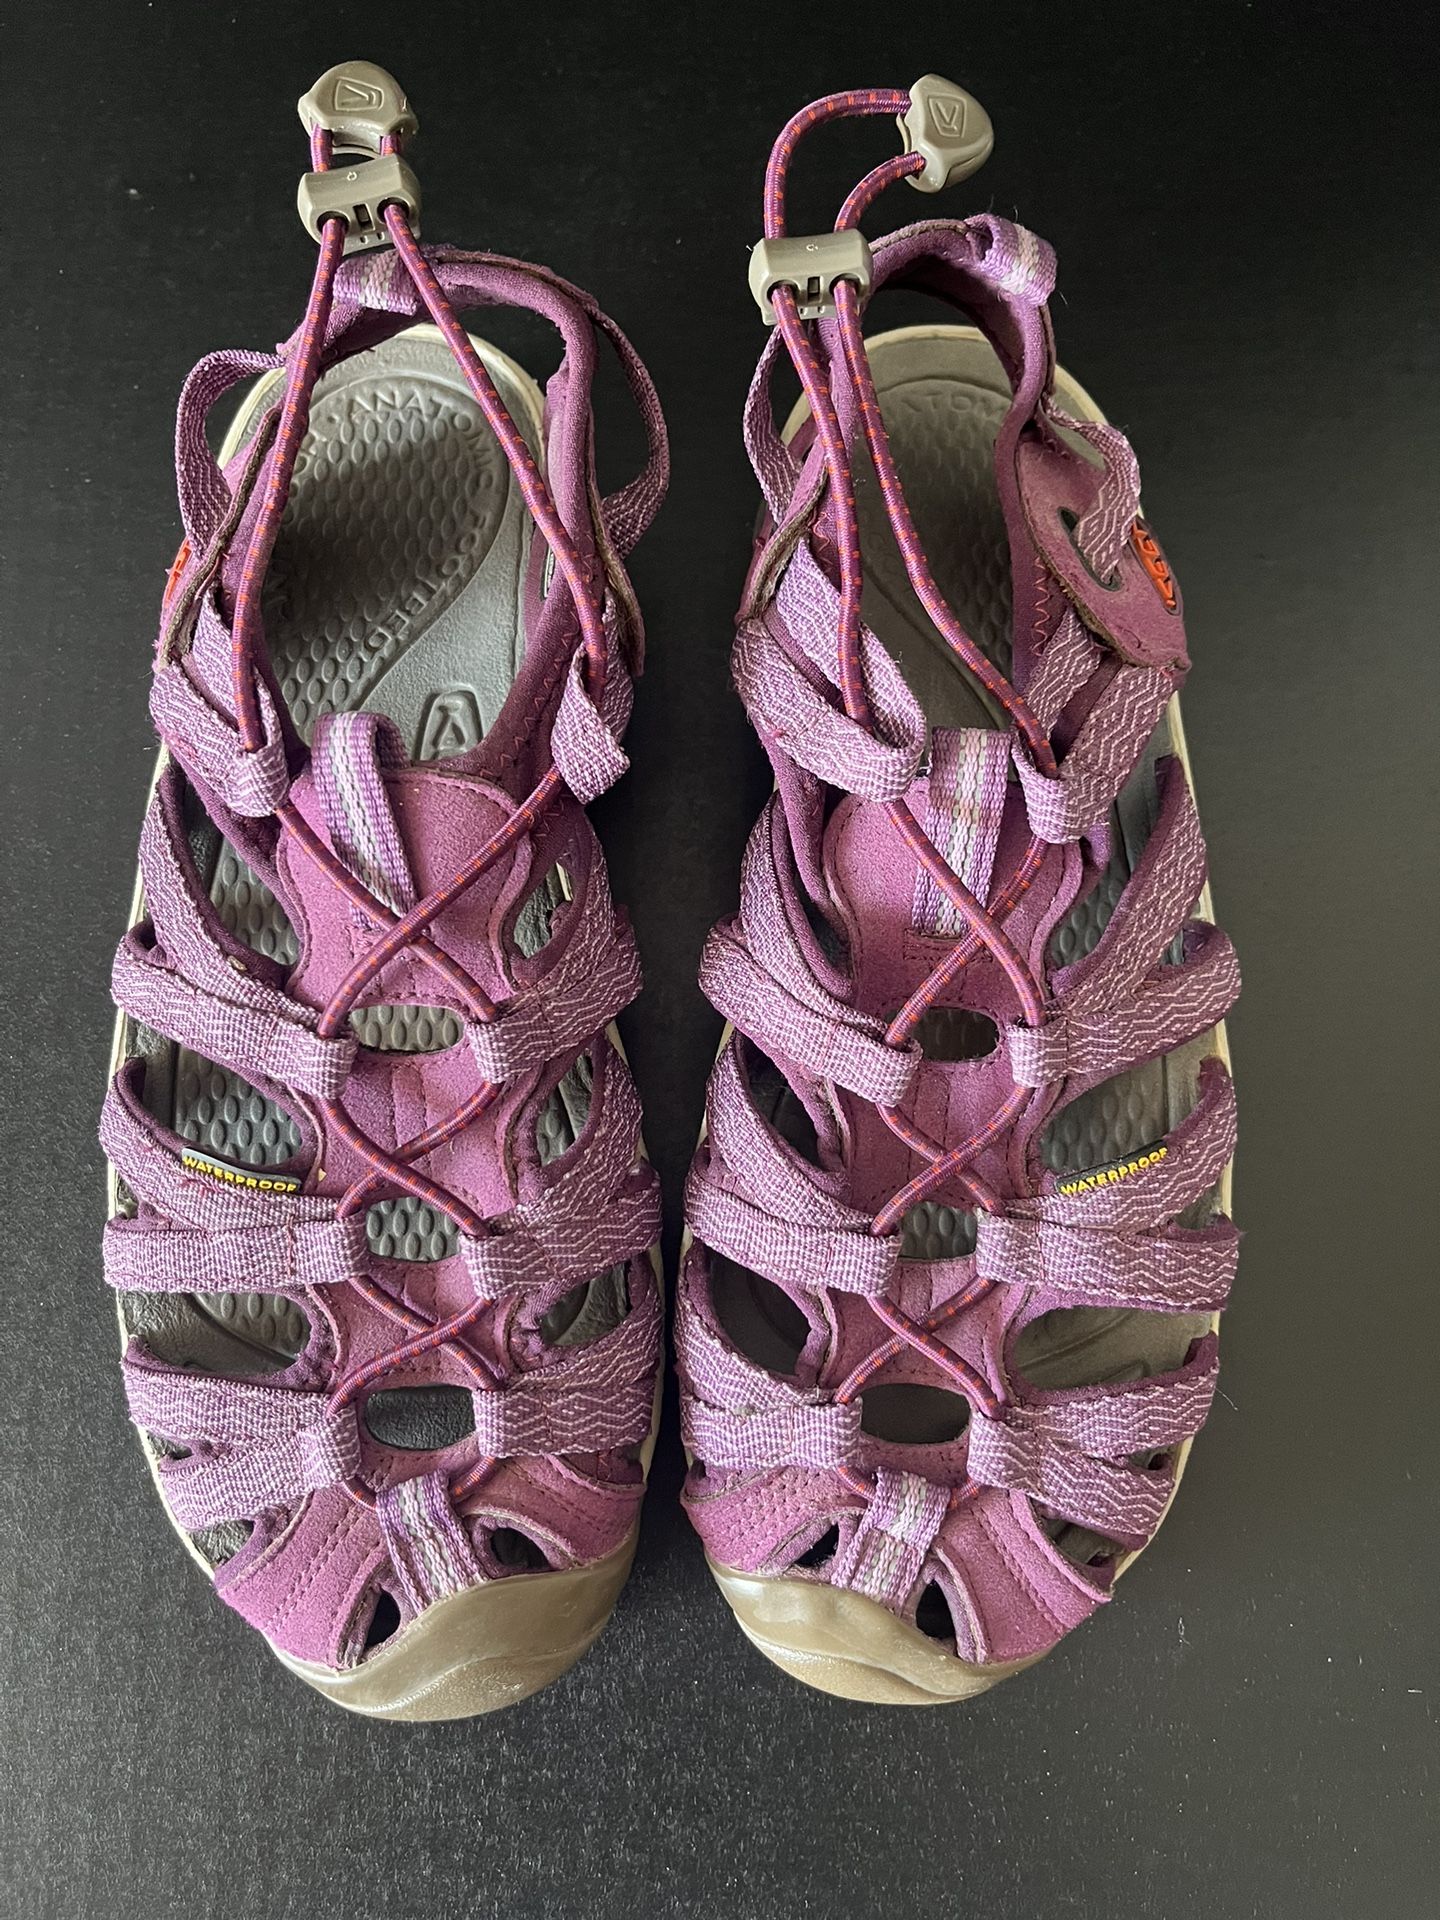  KEEN Whisper Closed Toe Purple Waterproof Sport Sandals Women’s Size 8.5